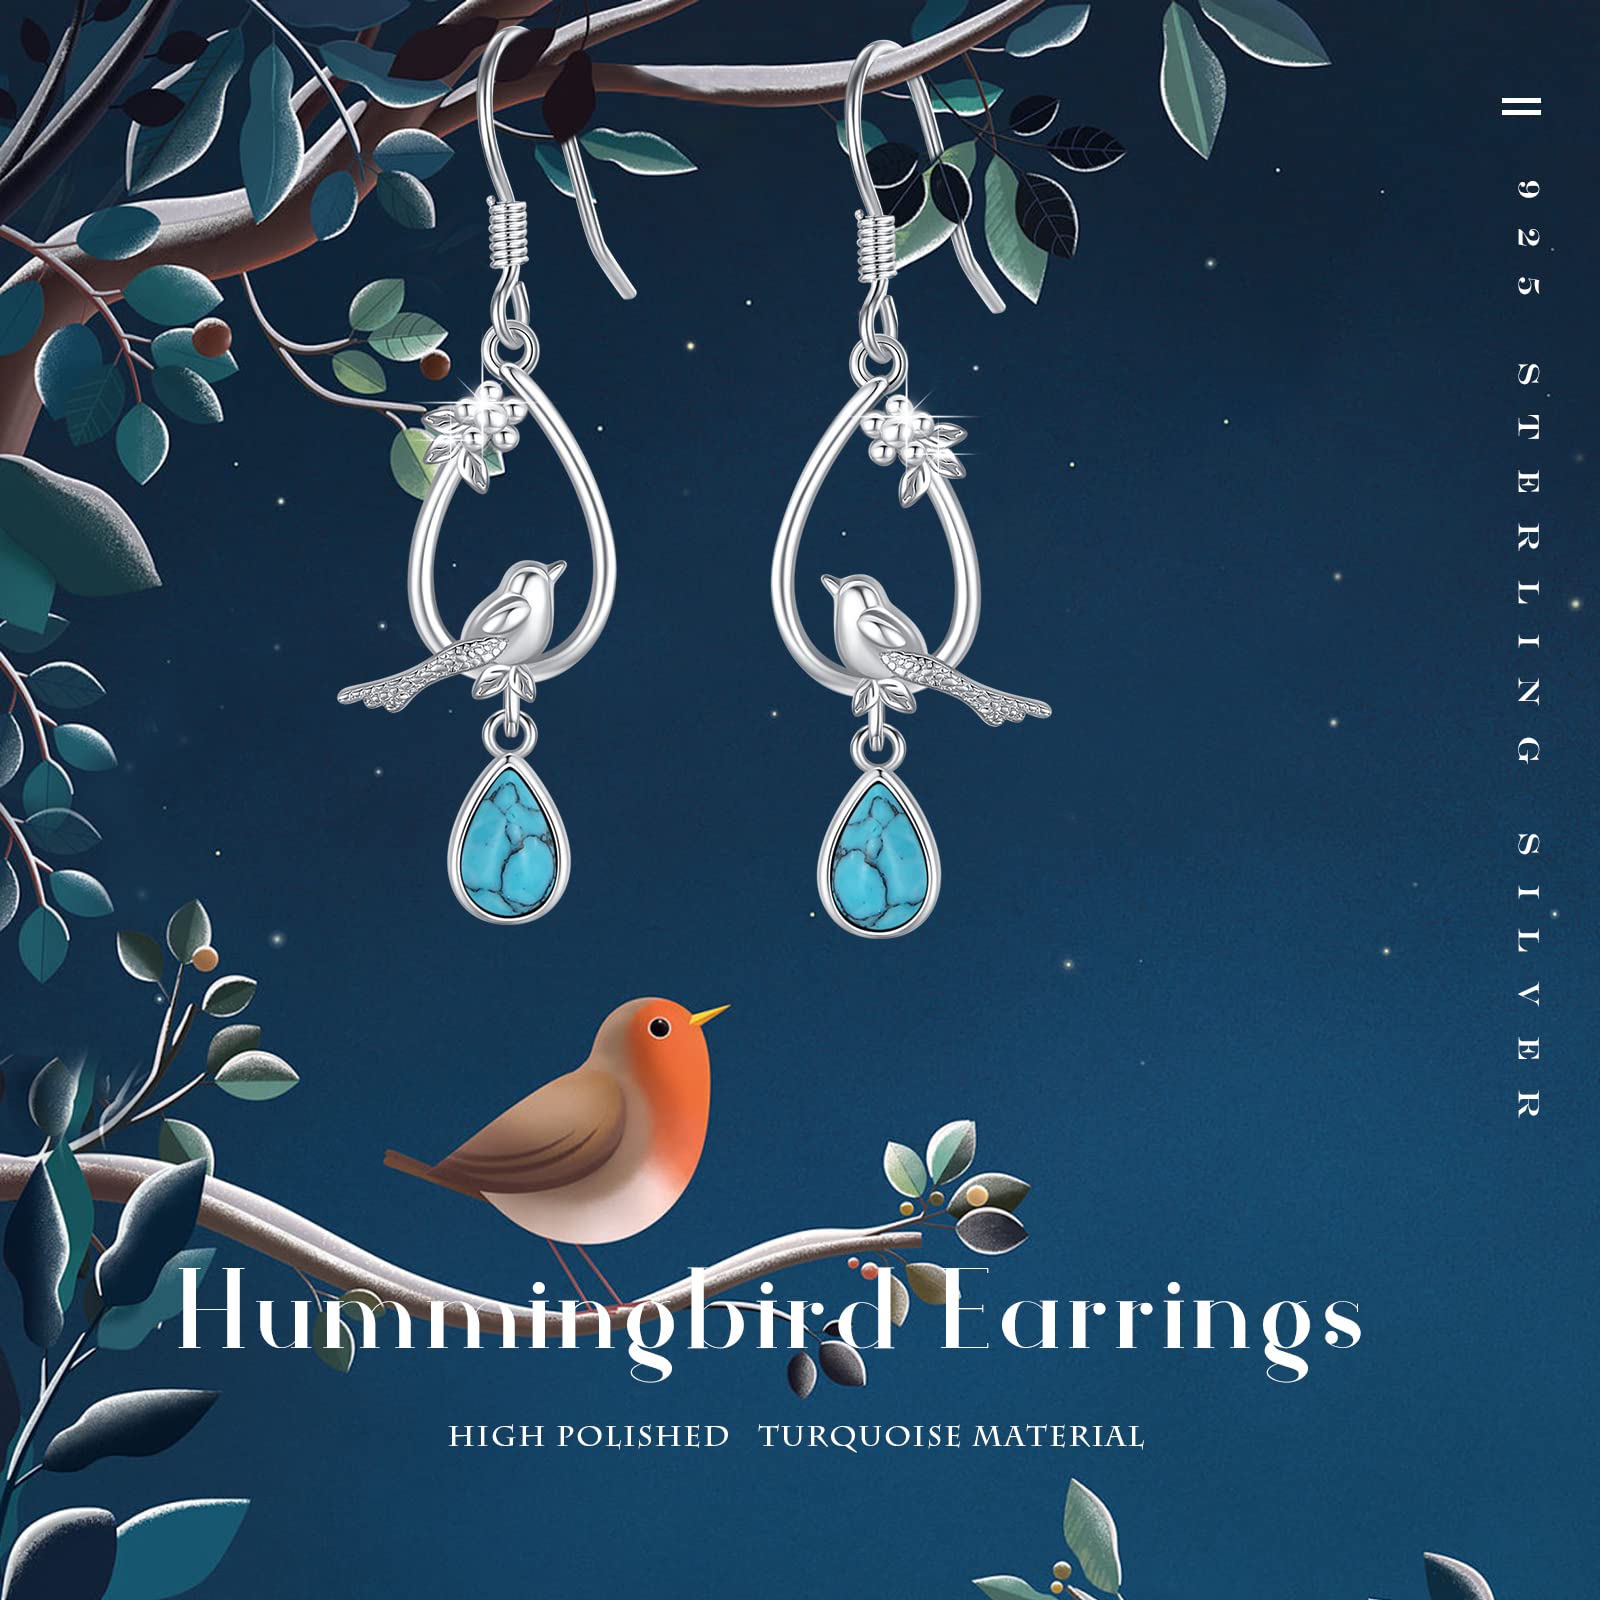 AOVEAO Hummingbird Earrings 925 Sterling Silver Turquoise Birds Drop Dangle Earrings Birds Teardrop Hook Earrings Turquoise Jewelry Gift for Women Girls